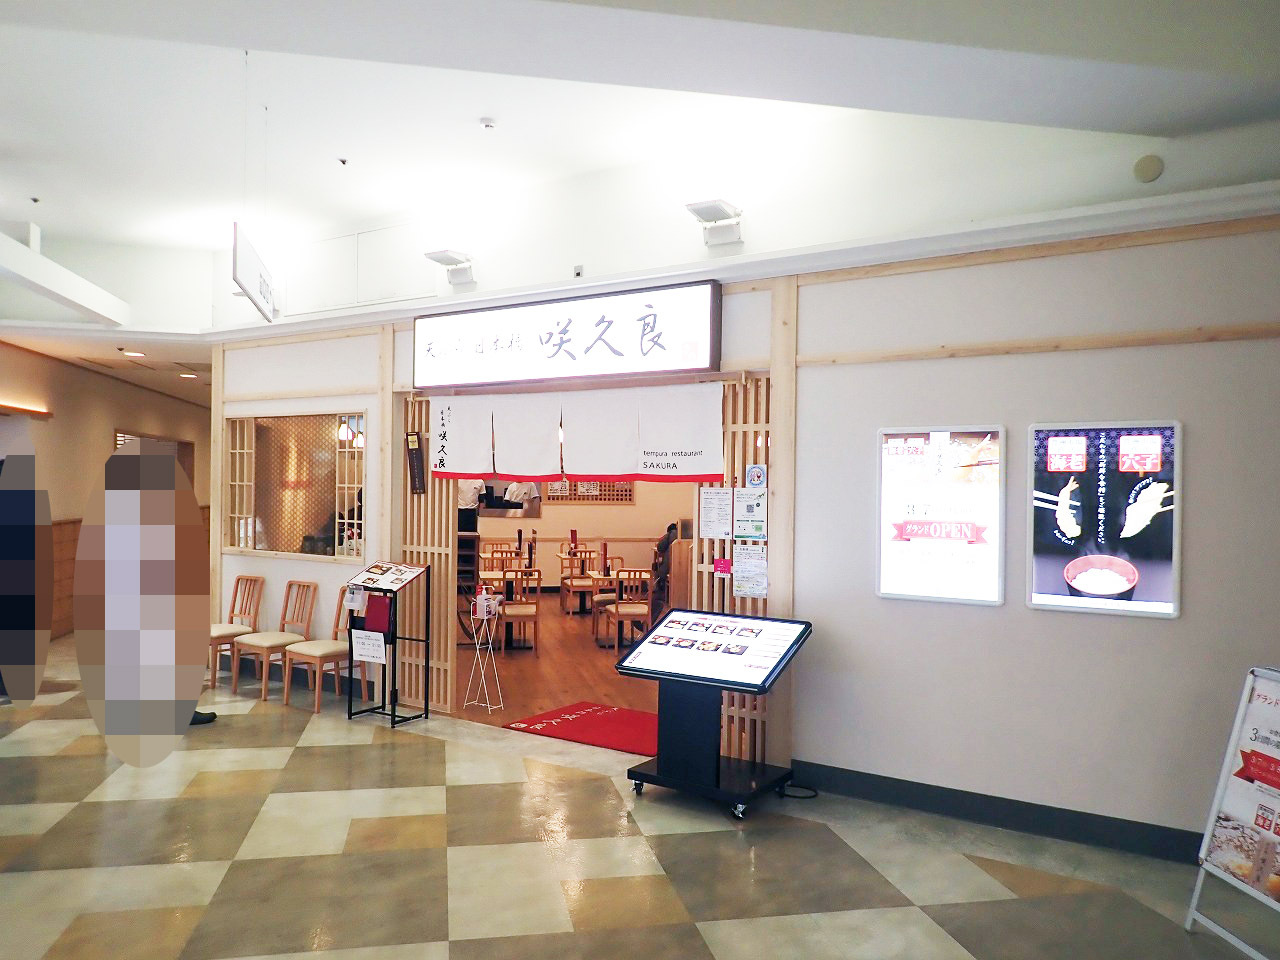 「天ぷら 日本橋咲久良 アトレマルヒロ川越店」は店名が示すように天ぷらのお店です